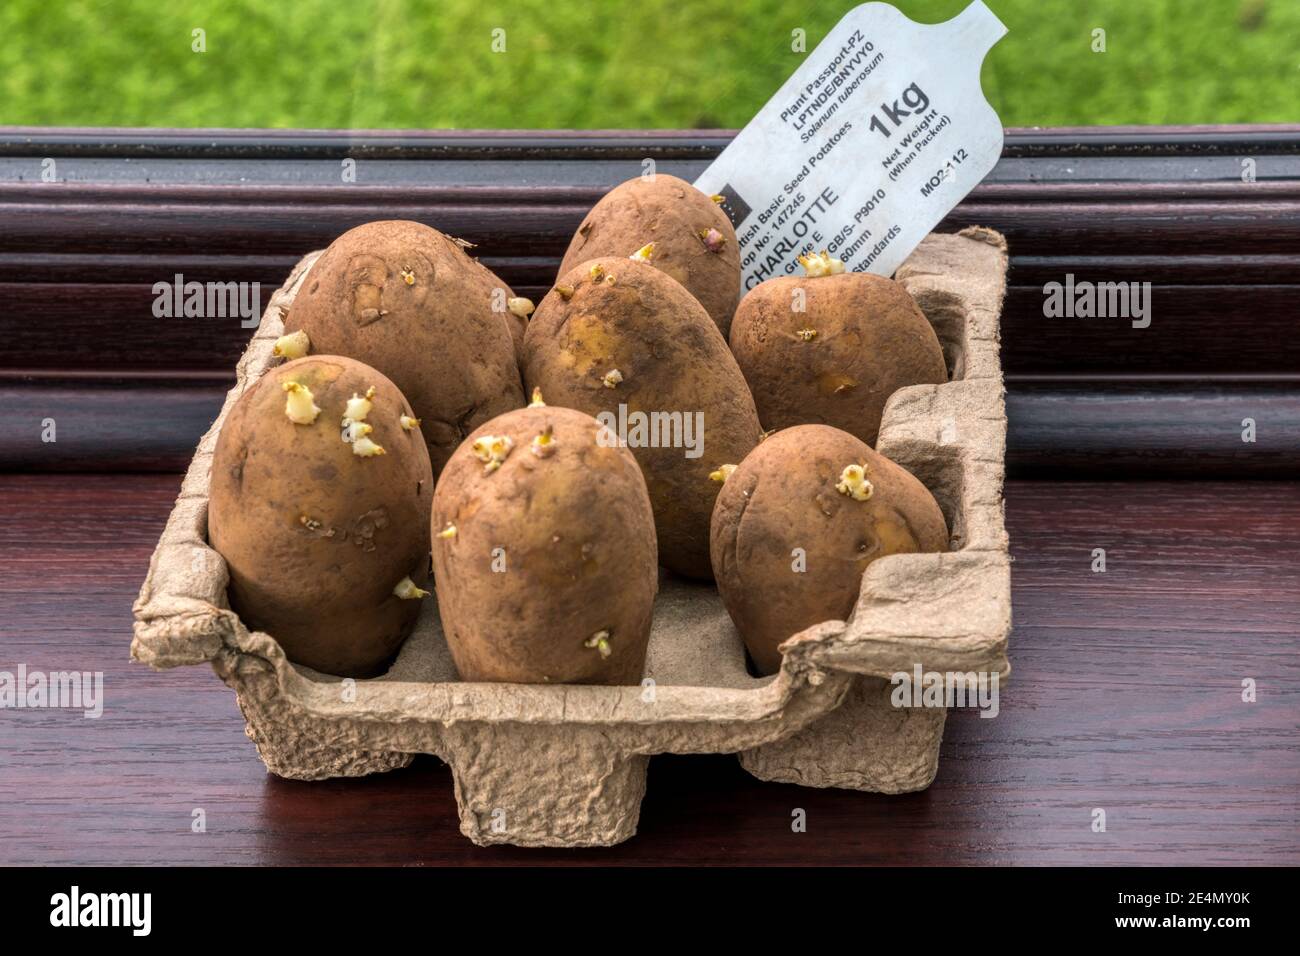 La vaiolatura delle patate da semina su un davanzale incoraggia i germogli forti prima di piantare. Queste sono le patate primaticce di Charlotte. Foto Stock